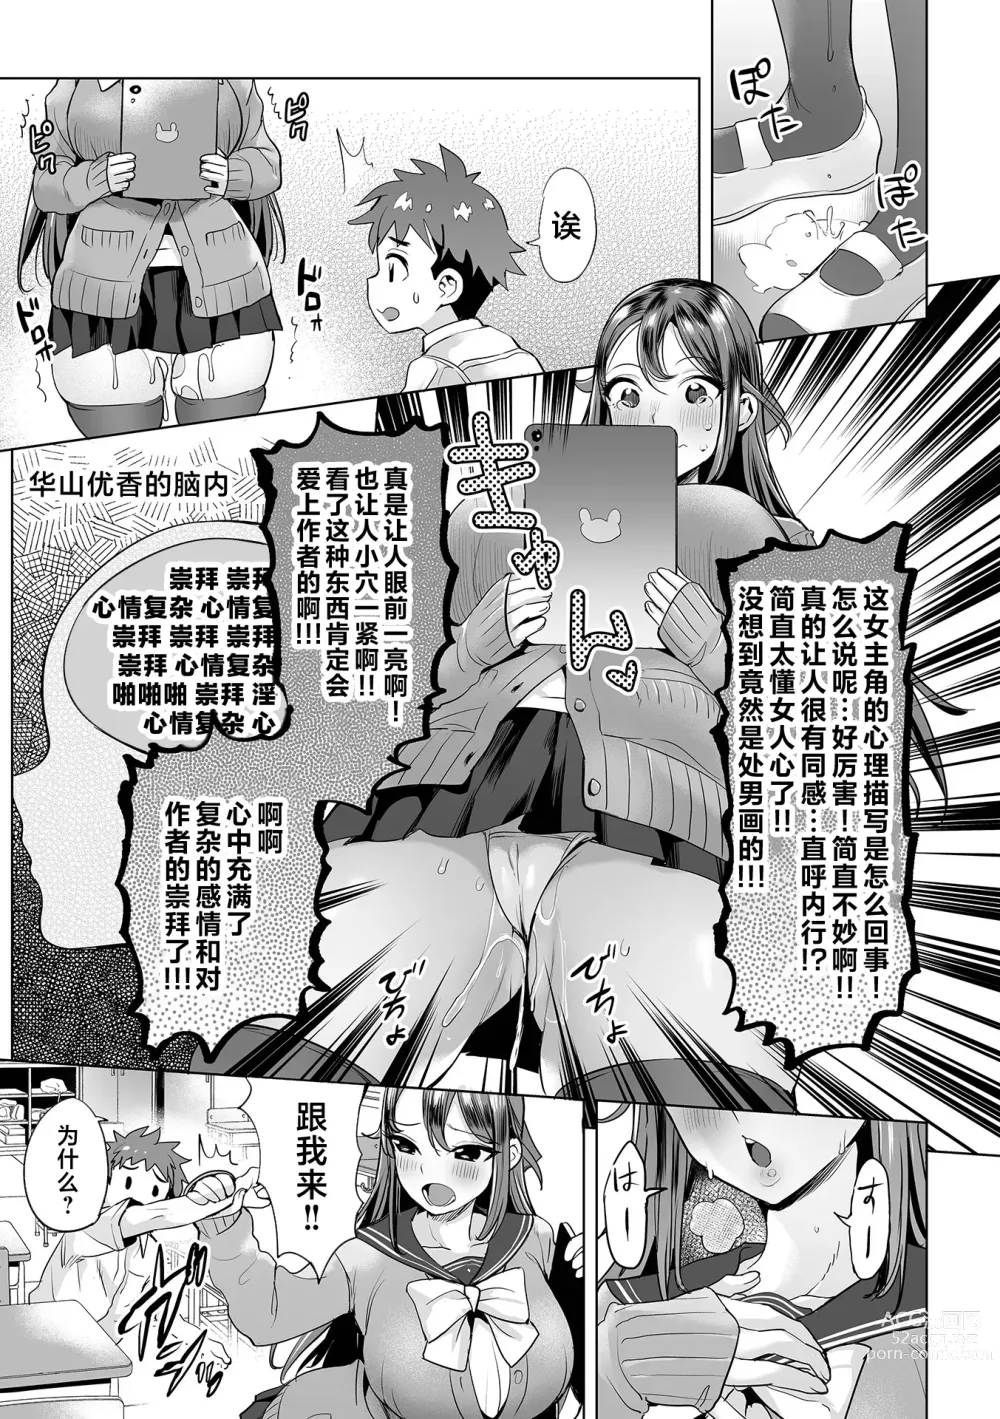 Page 4 of manga Mama Mi~ya#1--#4